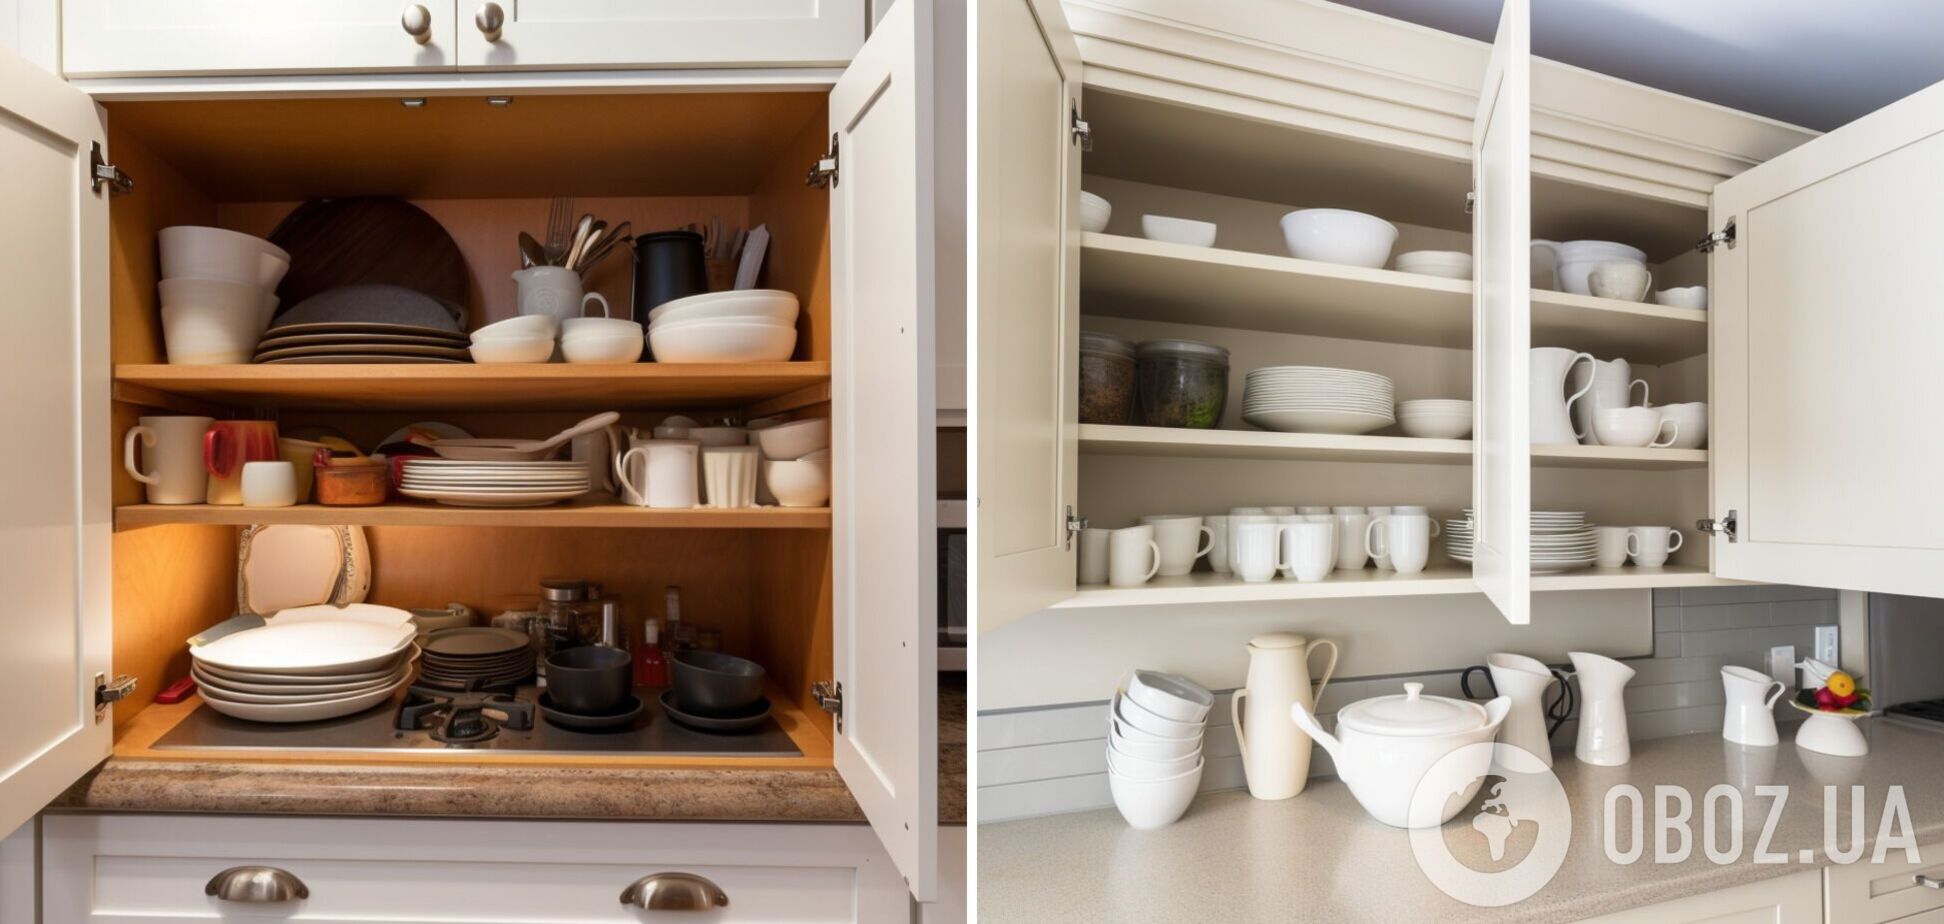 Що покласти у кухонні шафки, щоб приємно пахло: простий і дешевий лайфхак